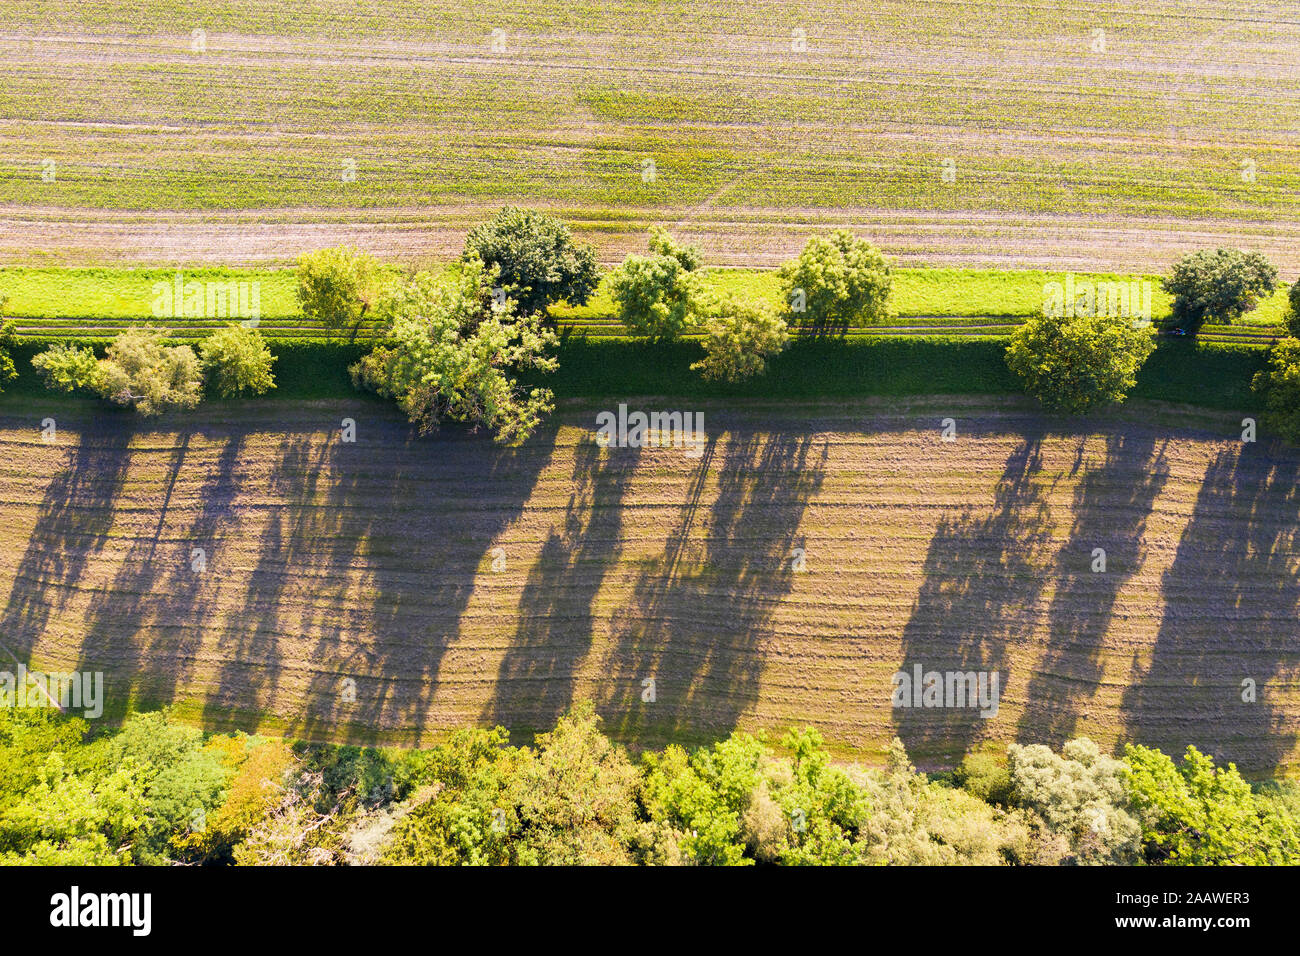 Alemania, Baviera, Schftlarn, vista aérea del campo Foto de stock